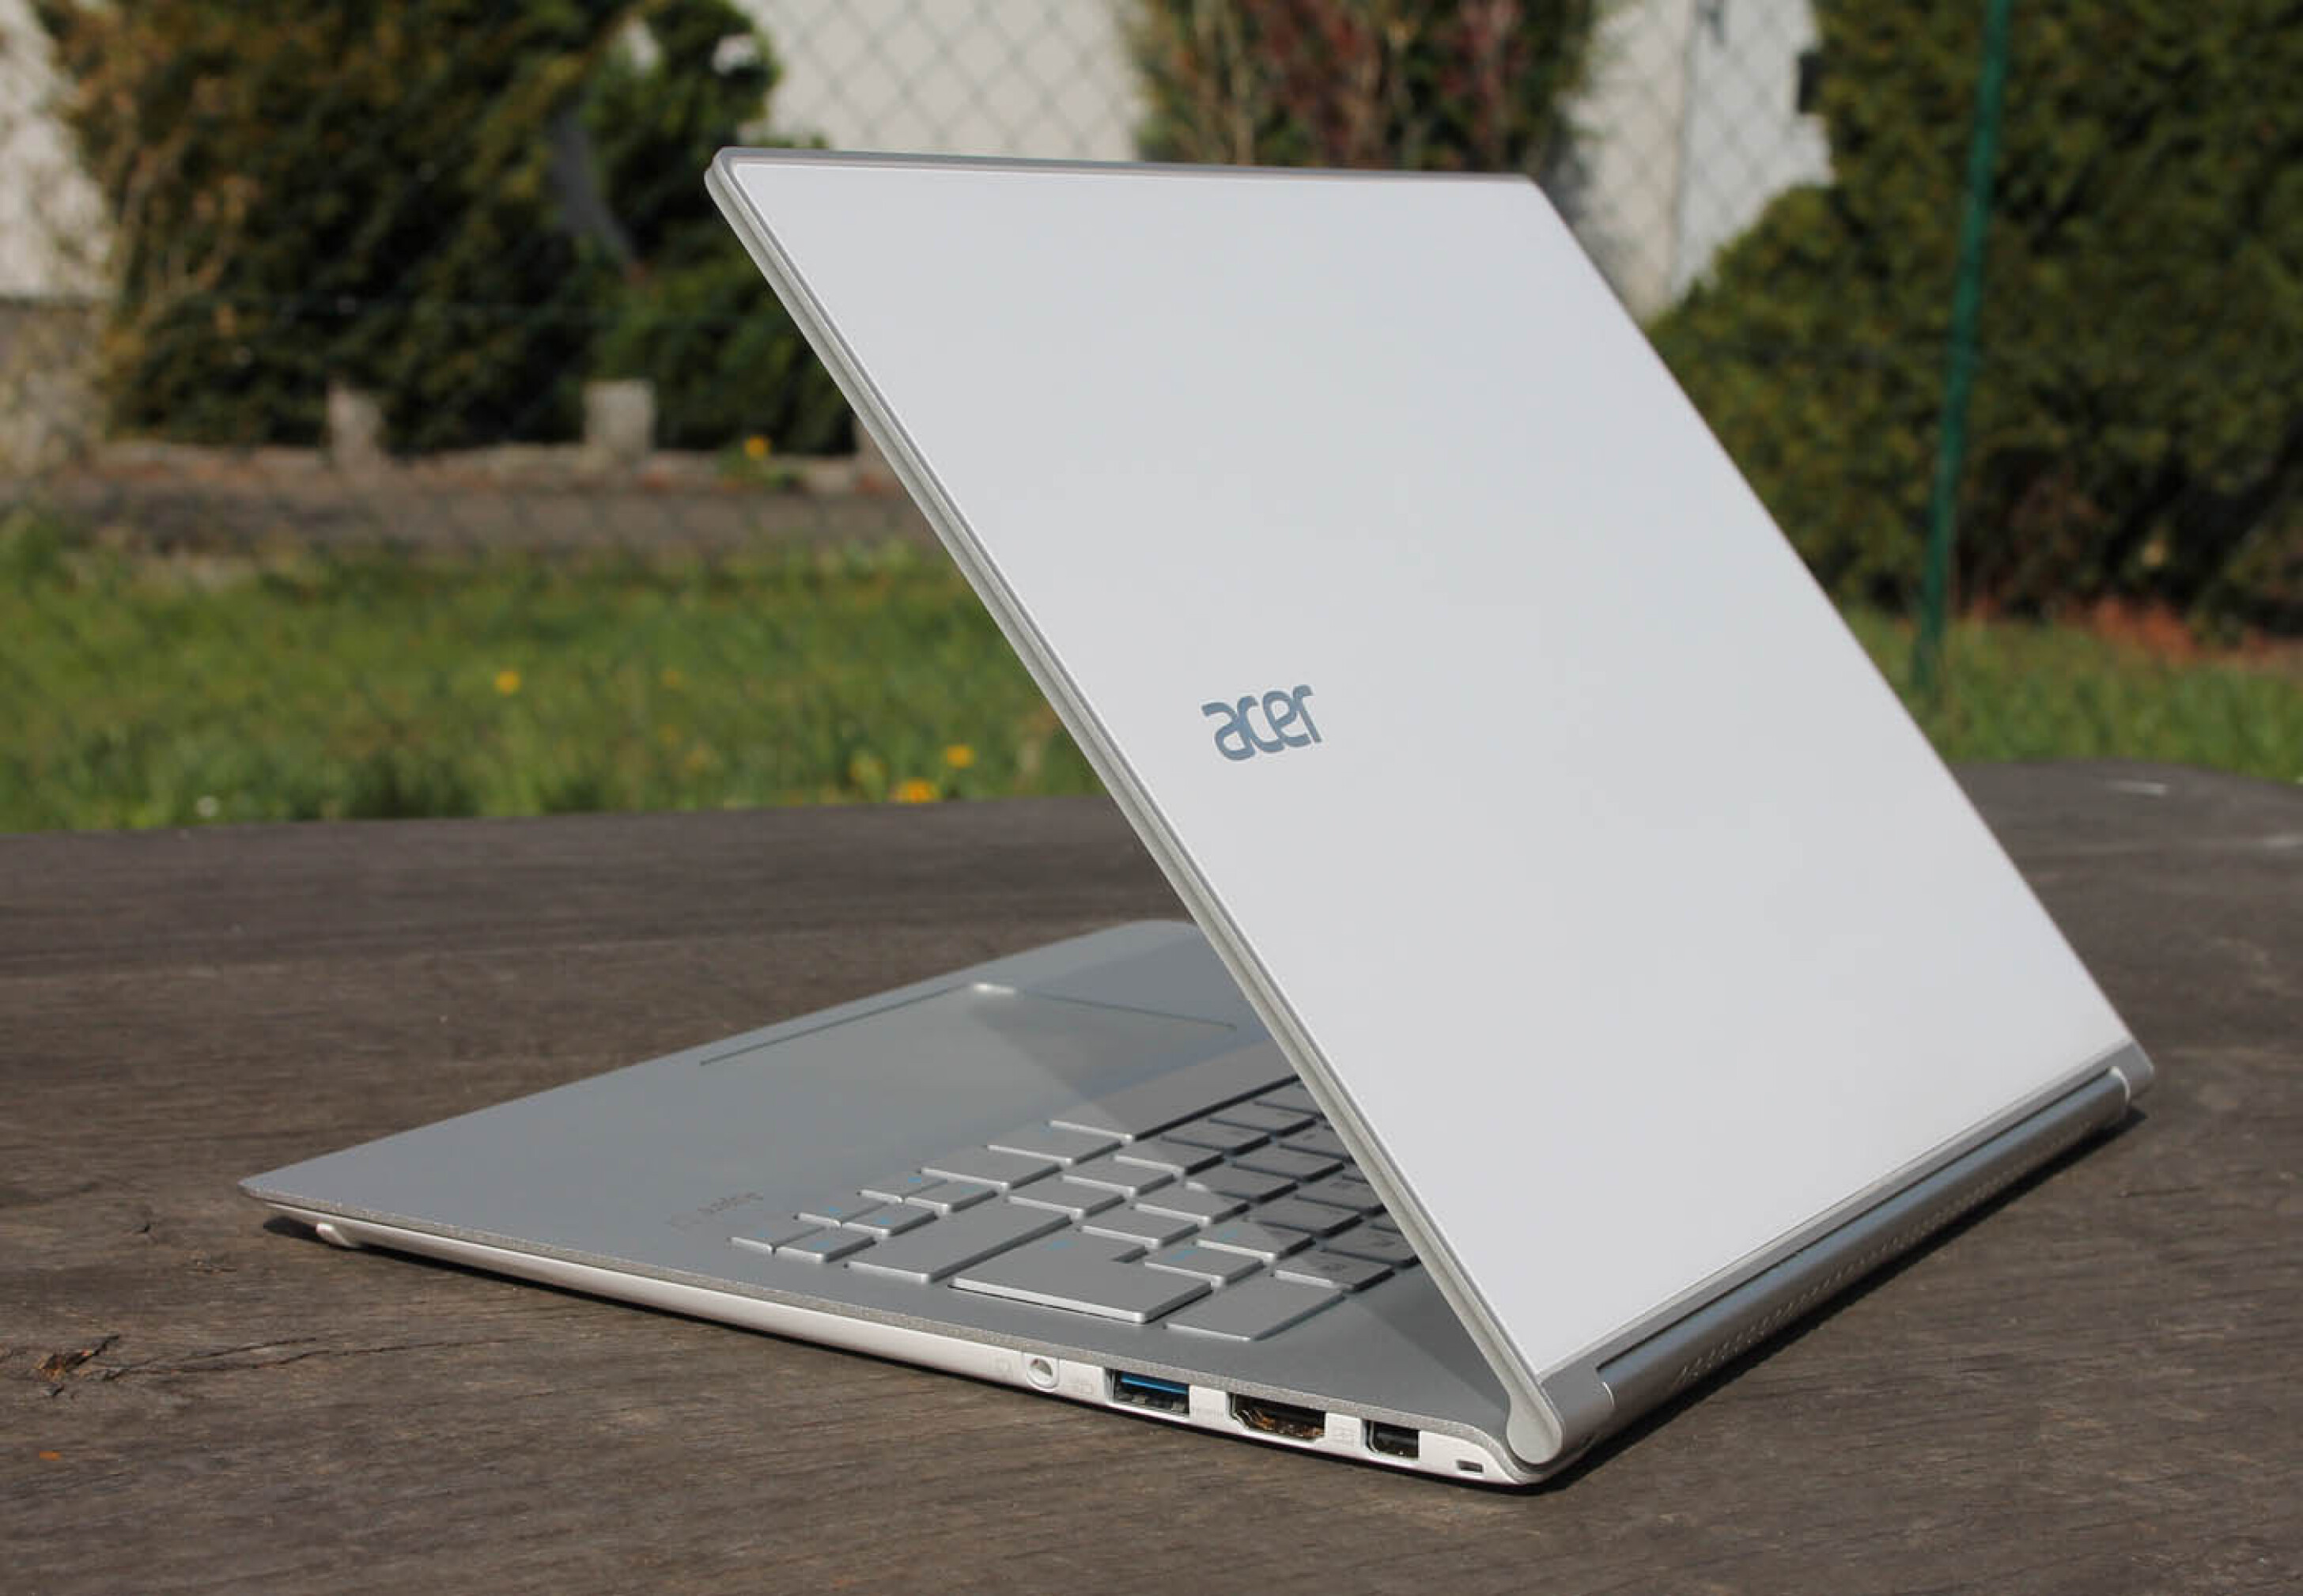  مشخصات دقیق و کامل لپ تاپ Acer Aspire S7 | خرید لپ تاپ استوک ایسر Acer Aspire S7 | Acer Aspire S7 با صفحه نمایش 11.6 